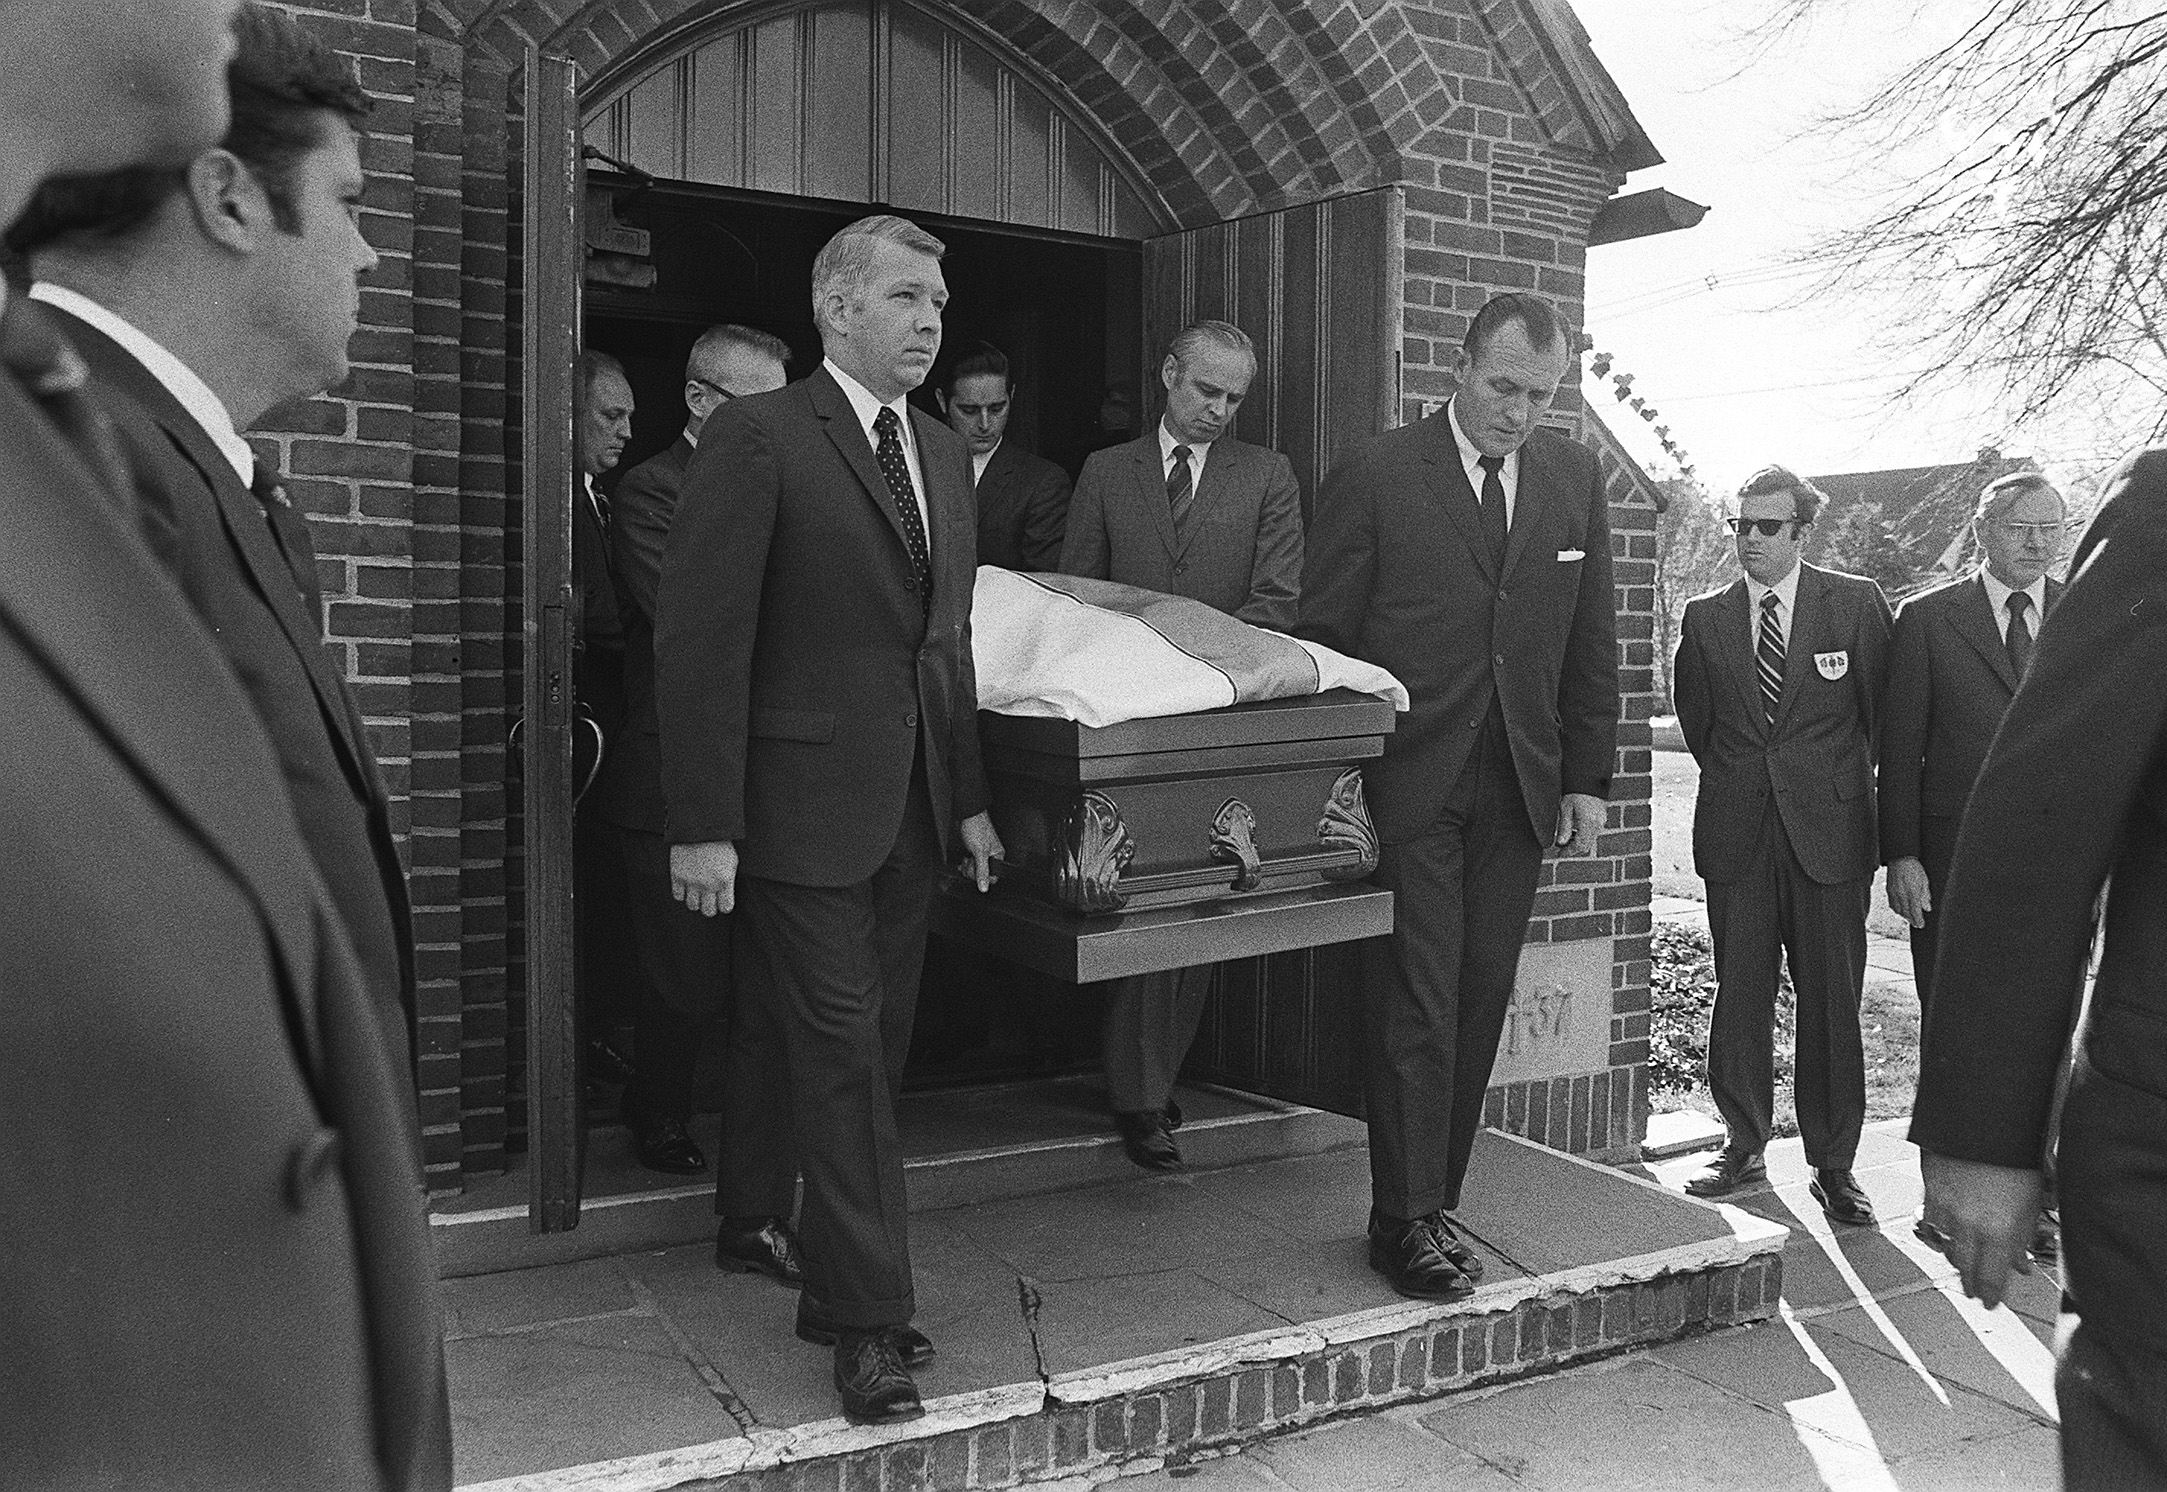 Funeral of John List's family